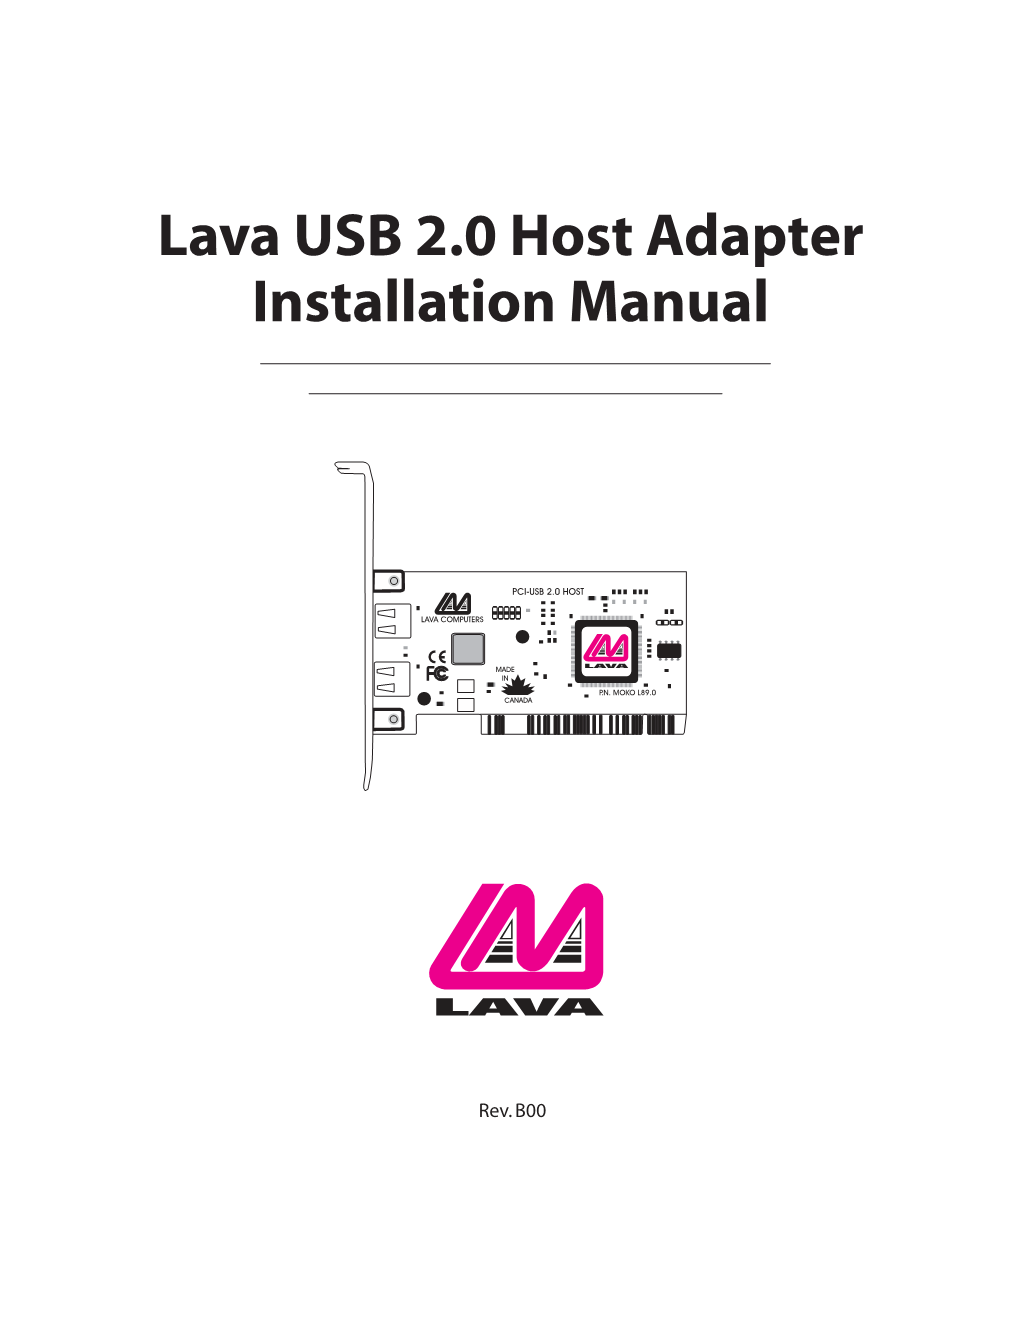 USB 2.0 Host Adapter Installation Manual